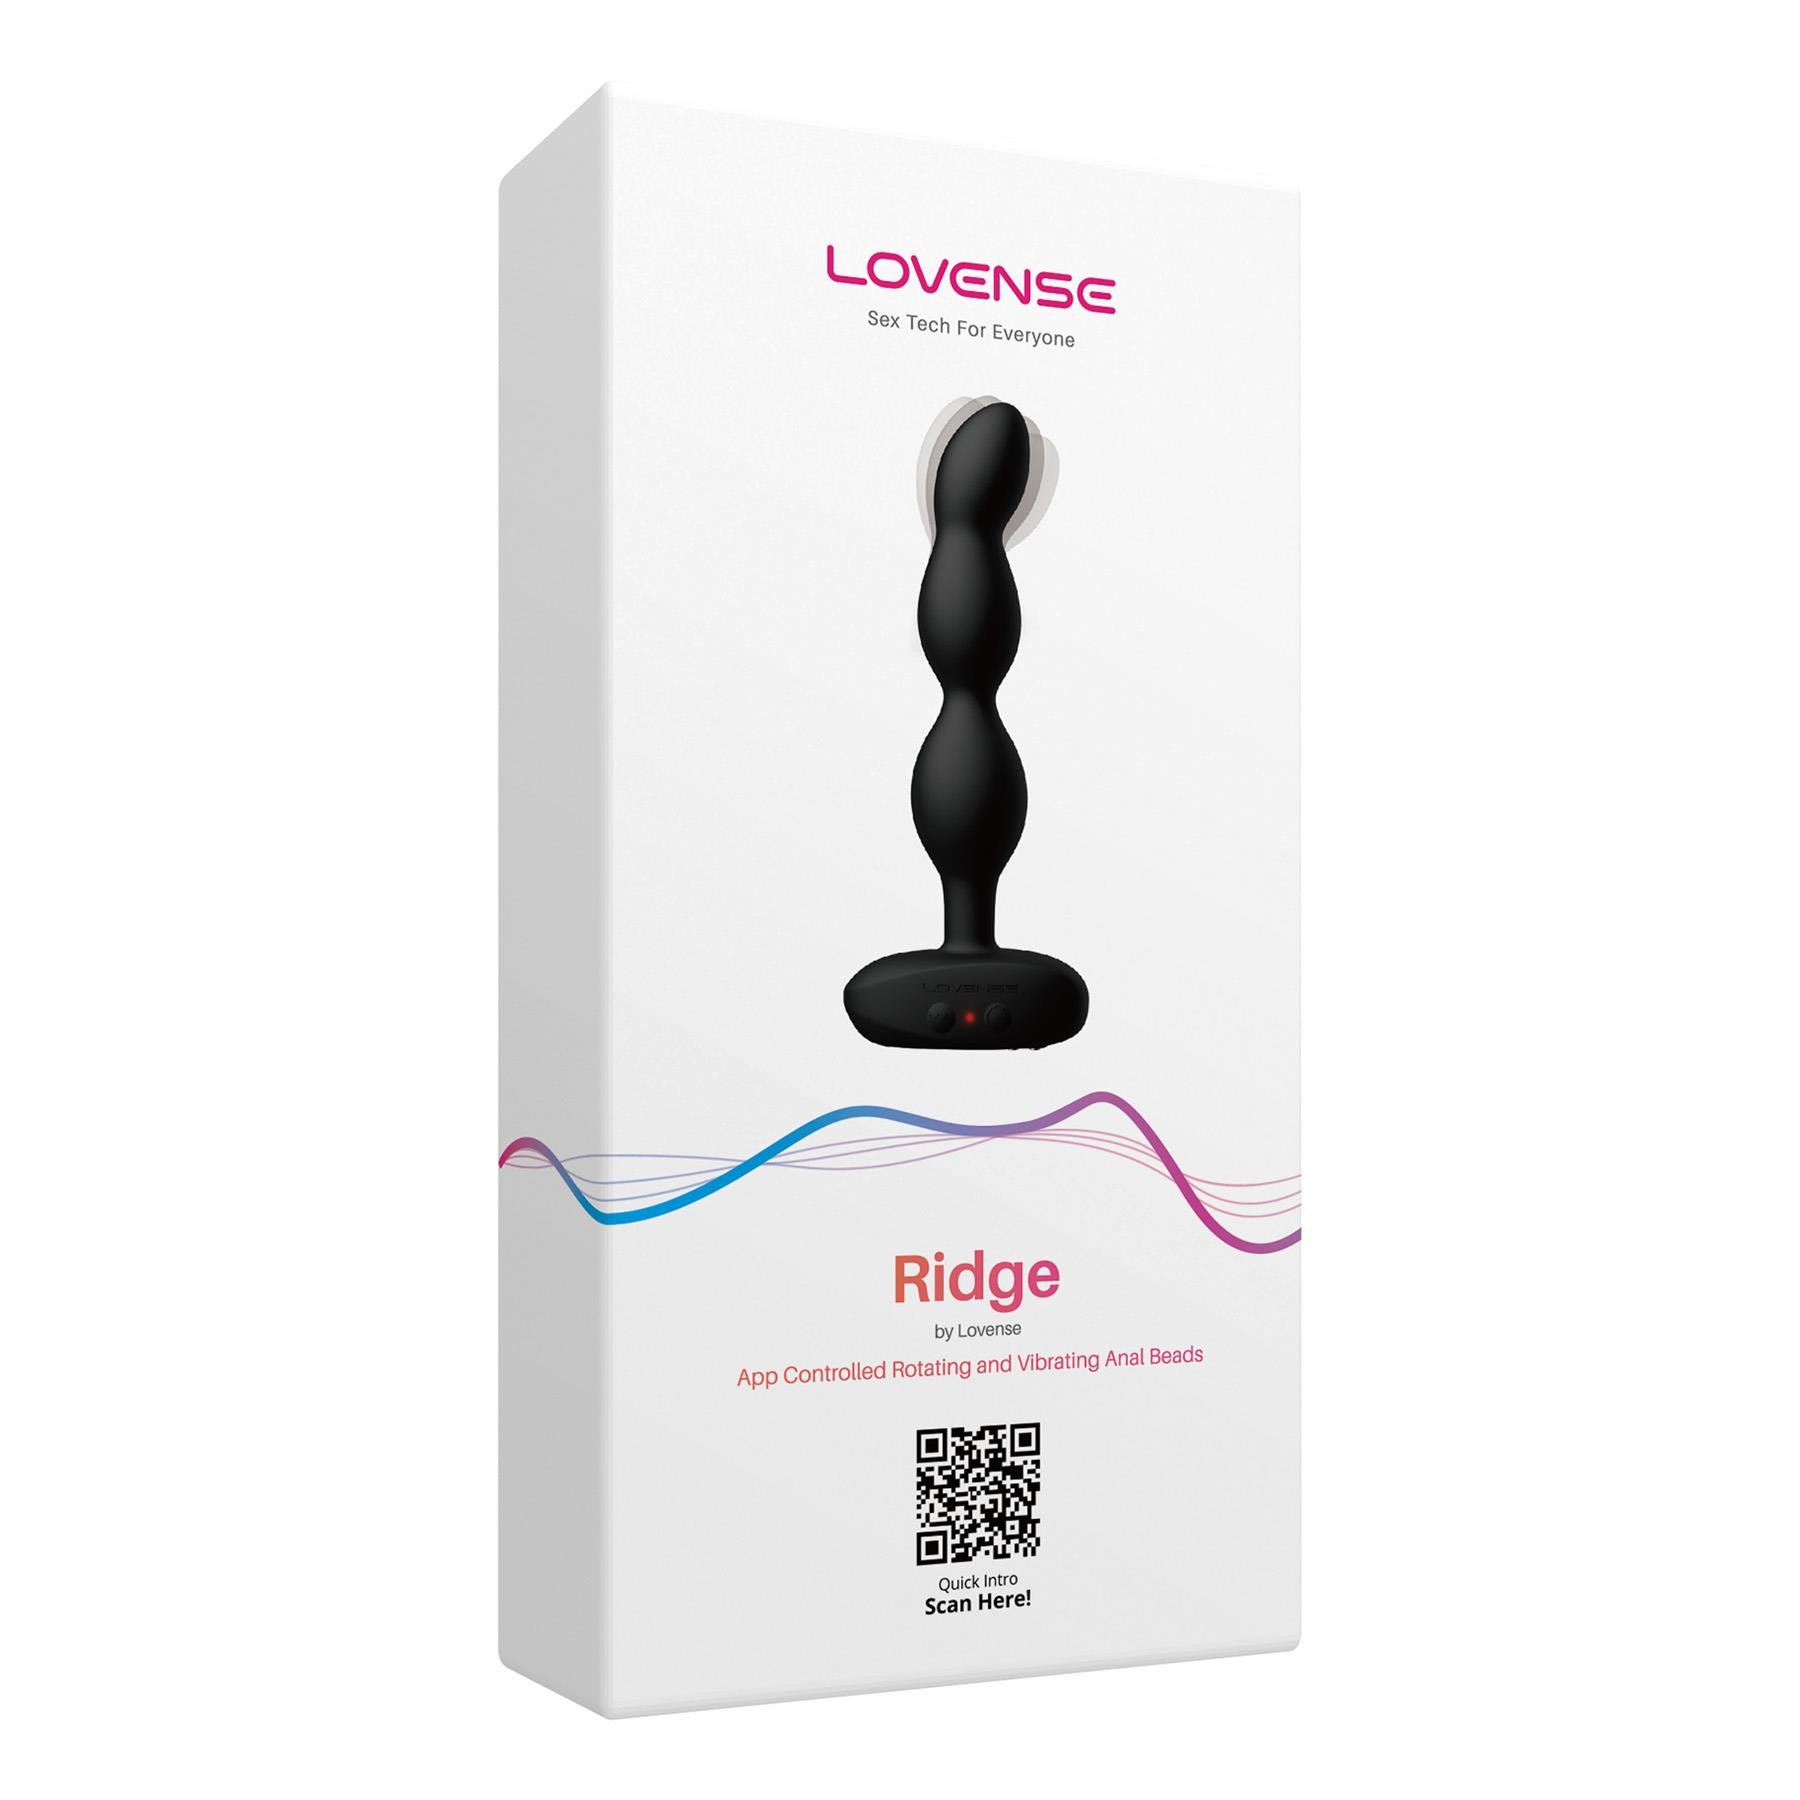 Lovense Ridge Bluetooth Rotating Anal Vibrator - Packaging